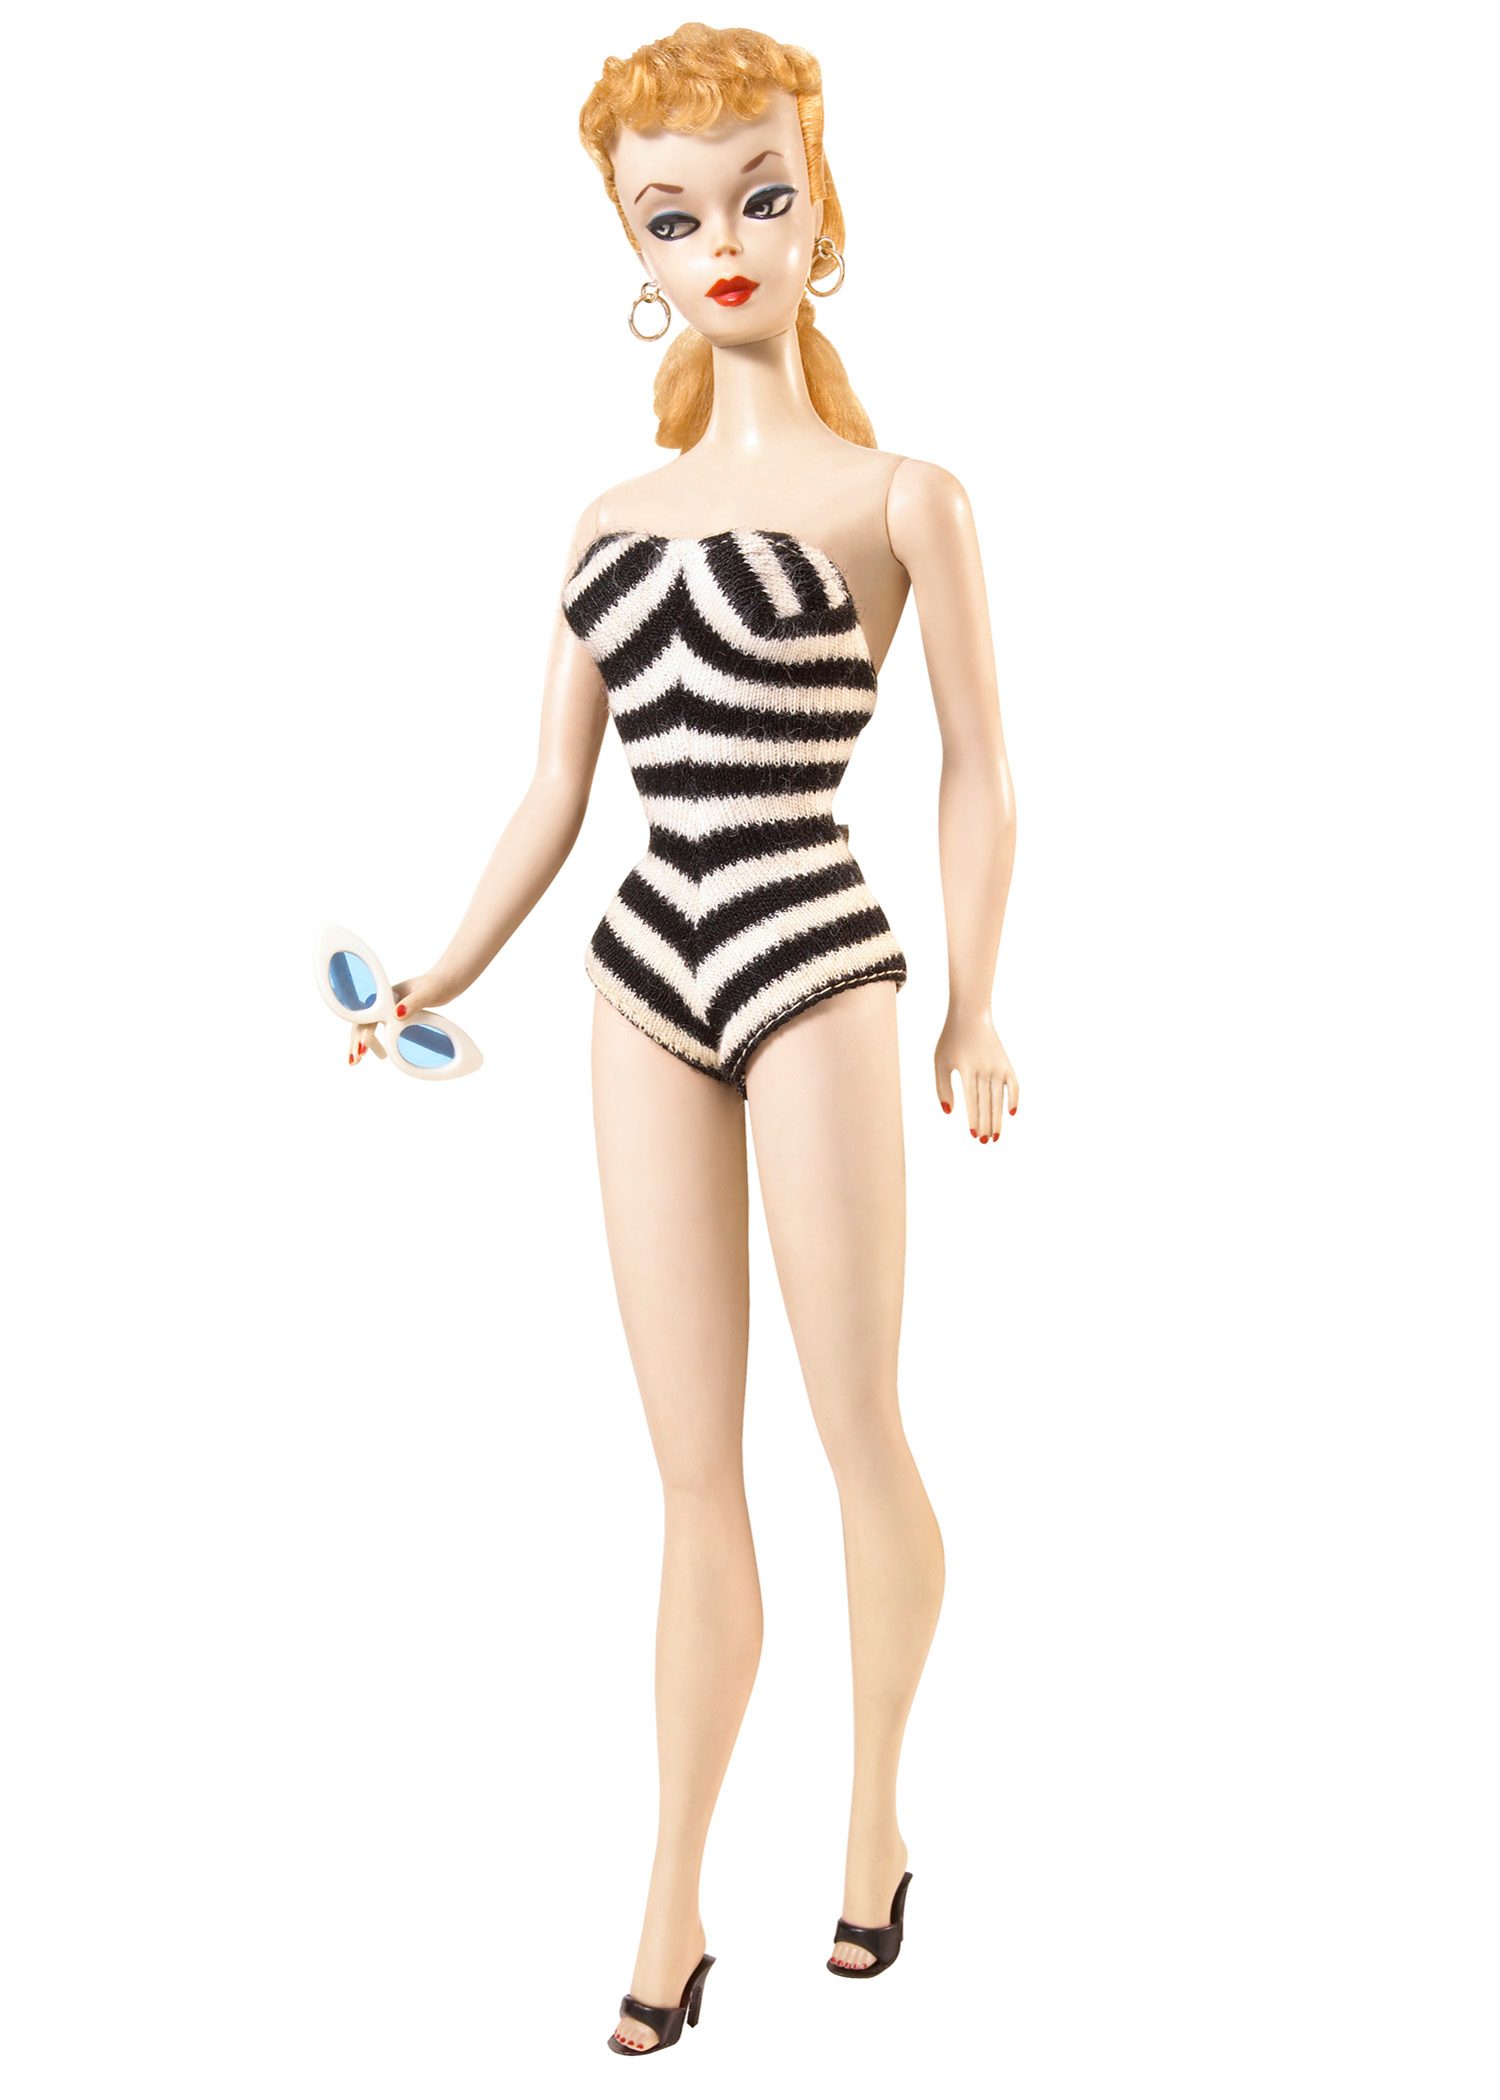 Vintage Barbie Doll 1960 to 1961